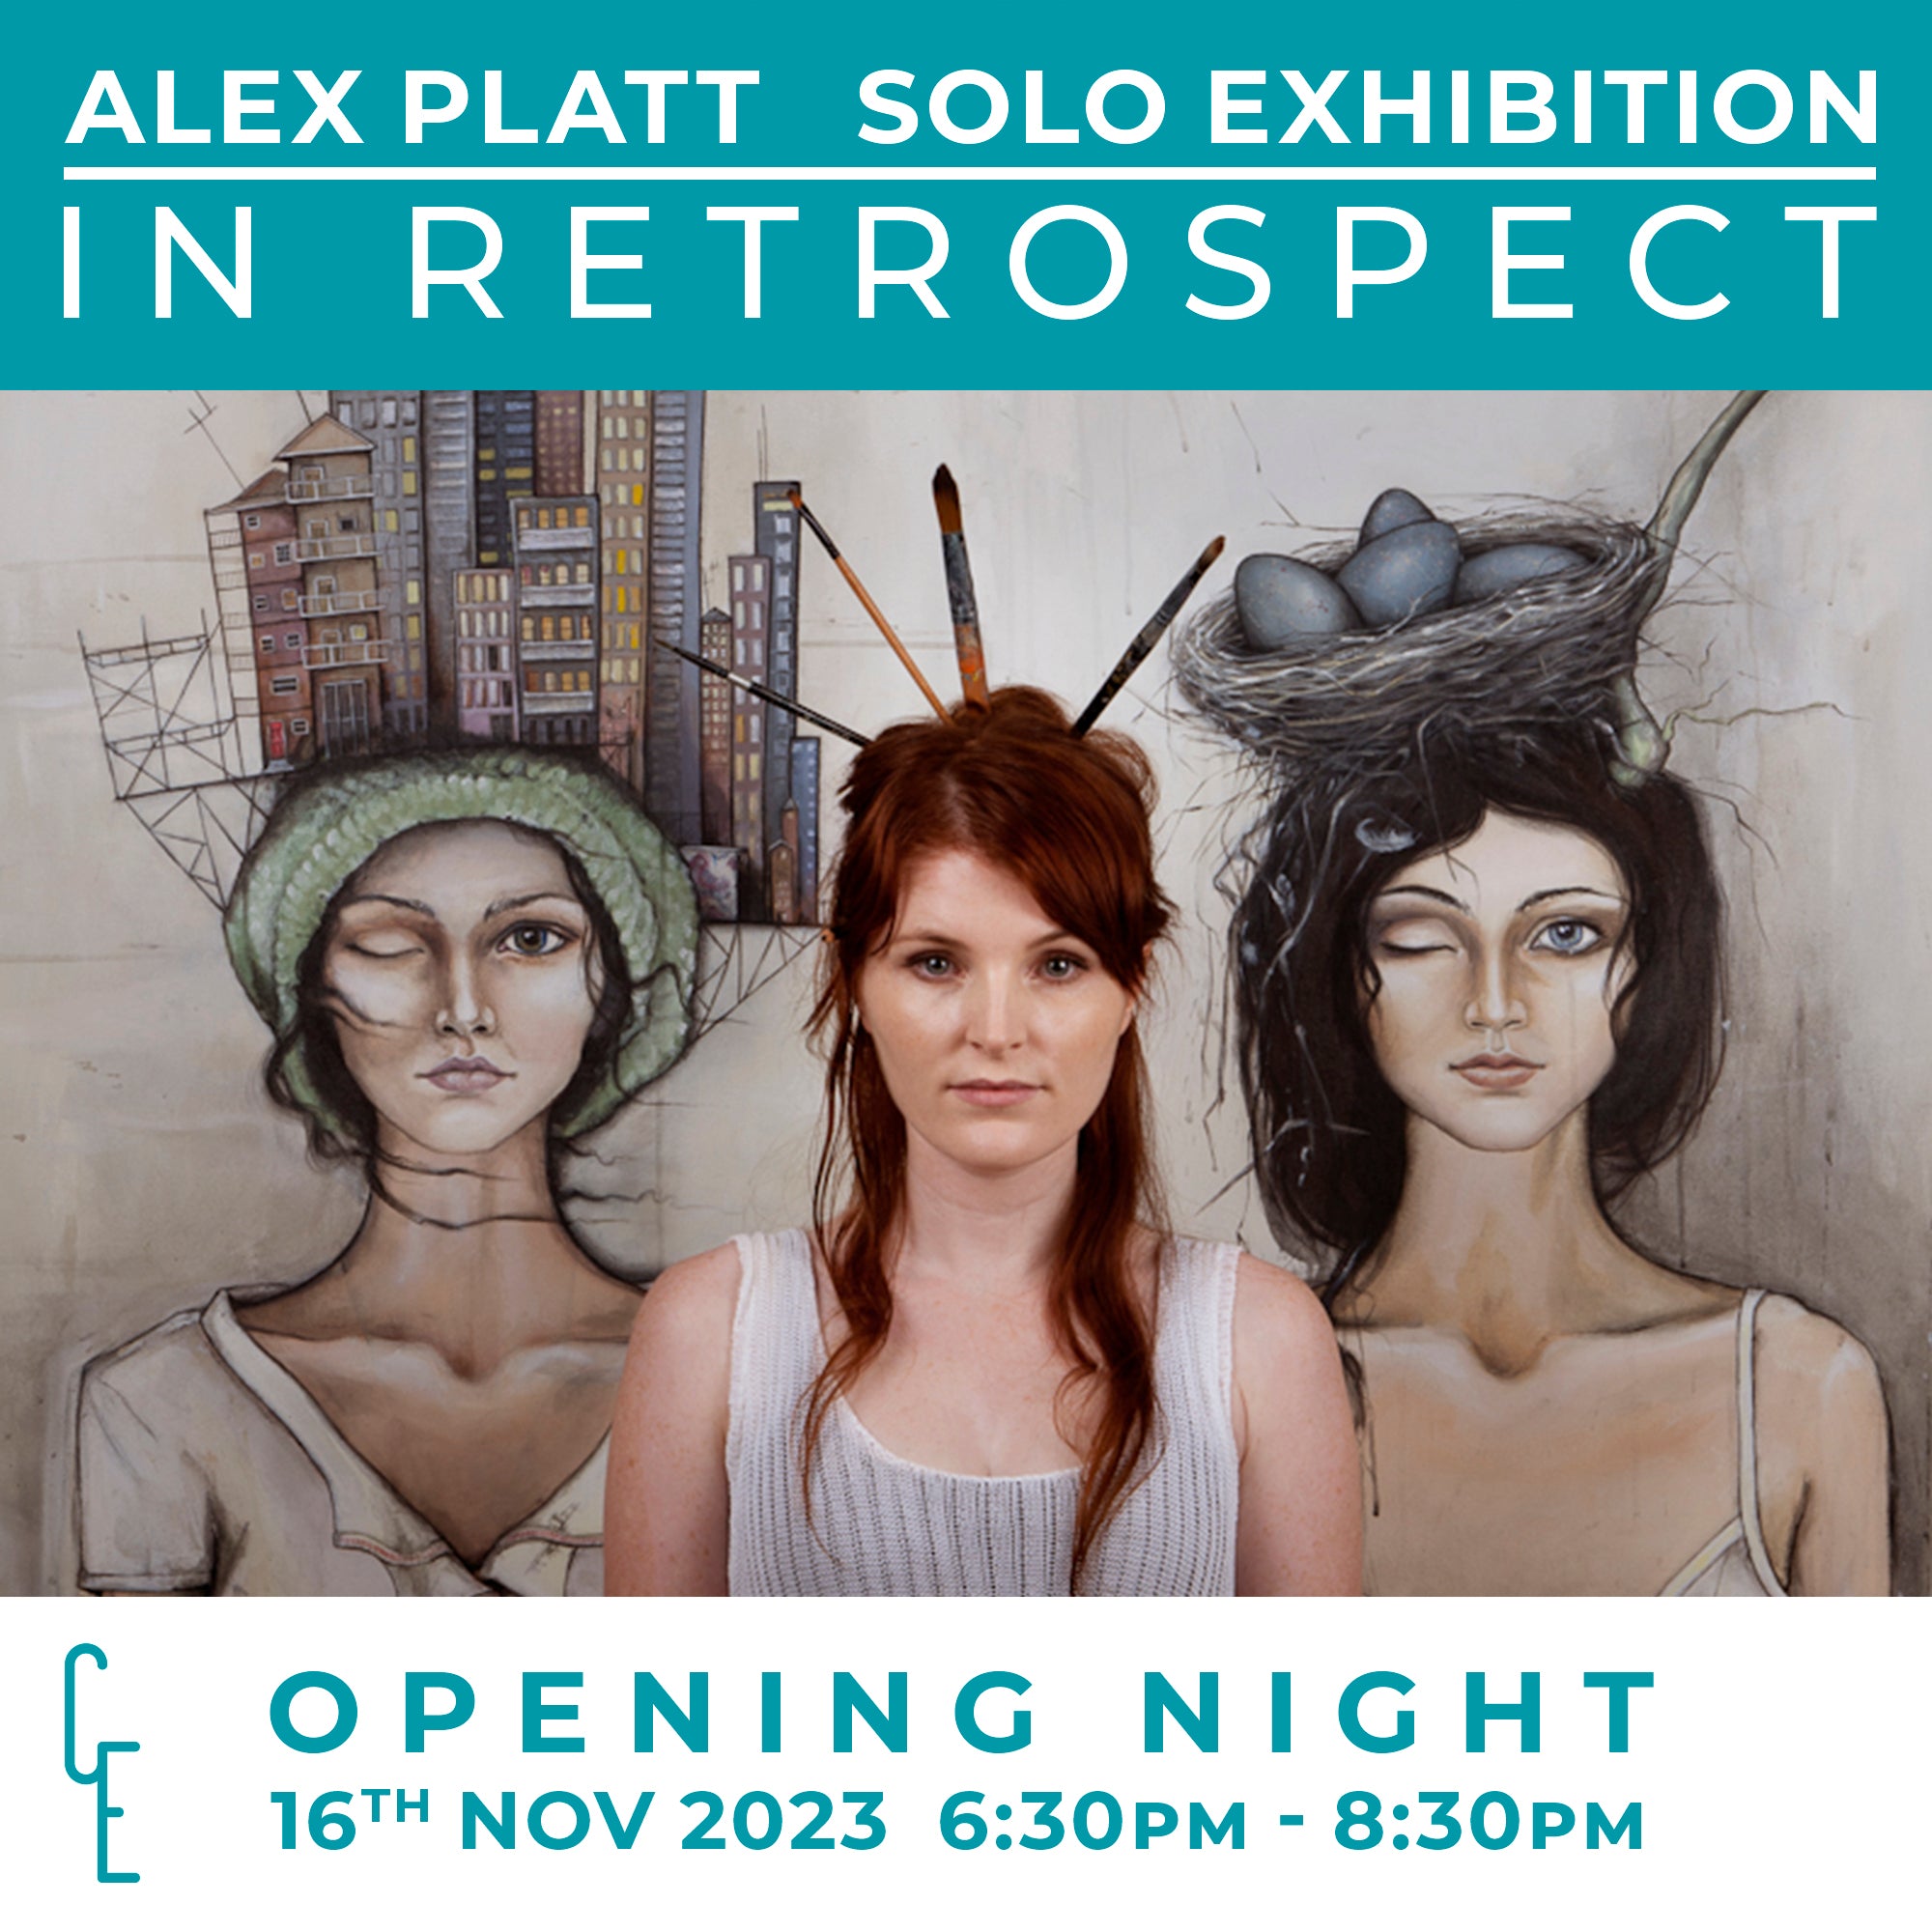 Alex Platt Exhibition - "In Retrospect" Opening Night